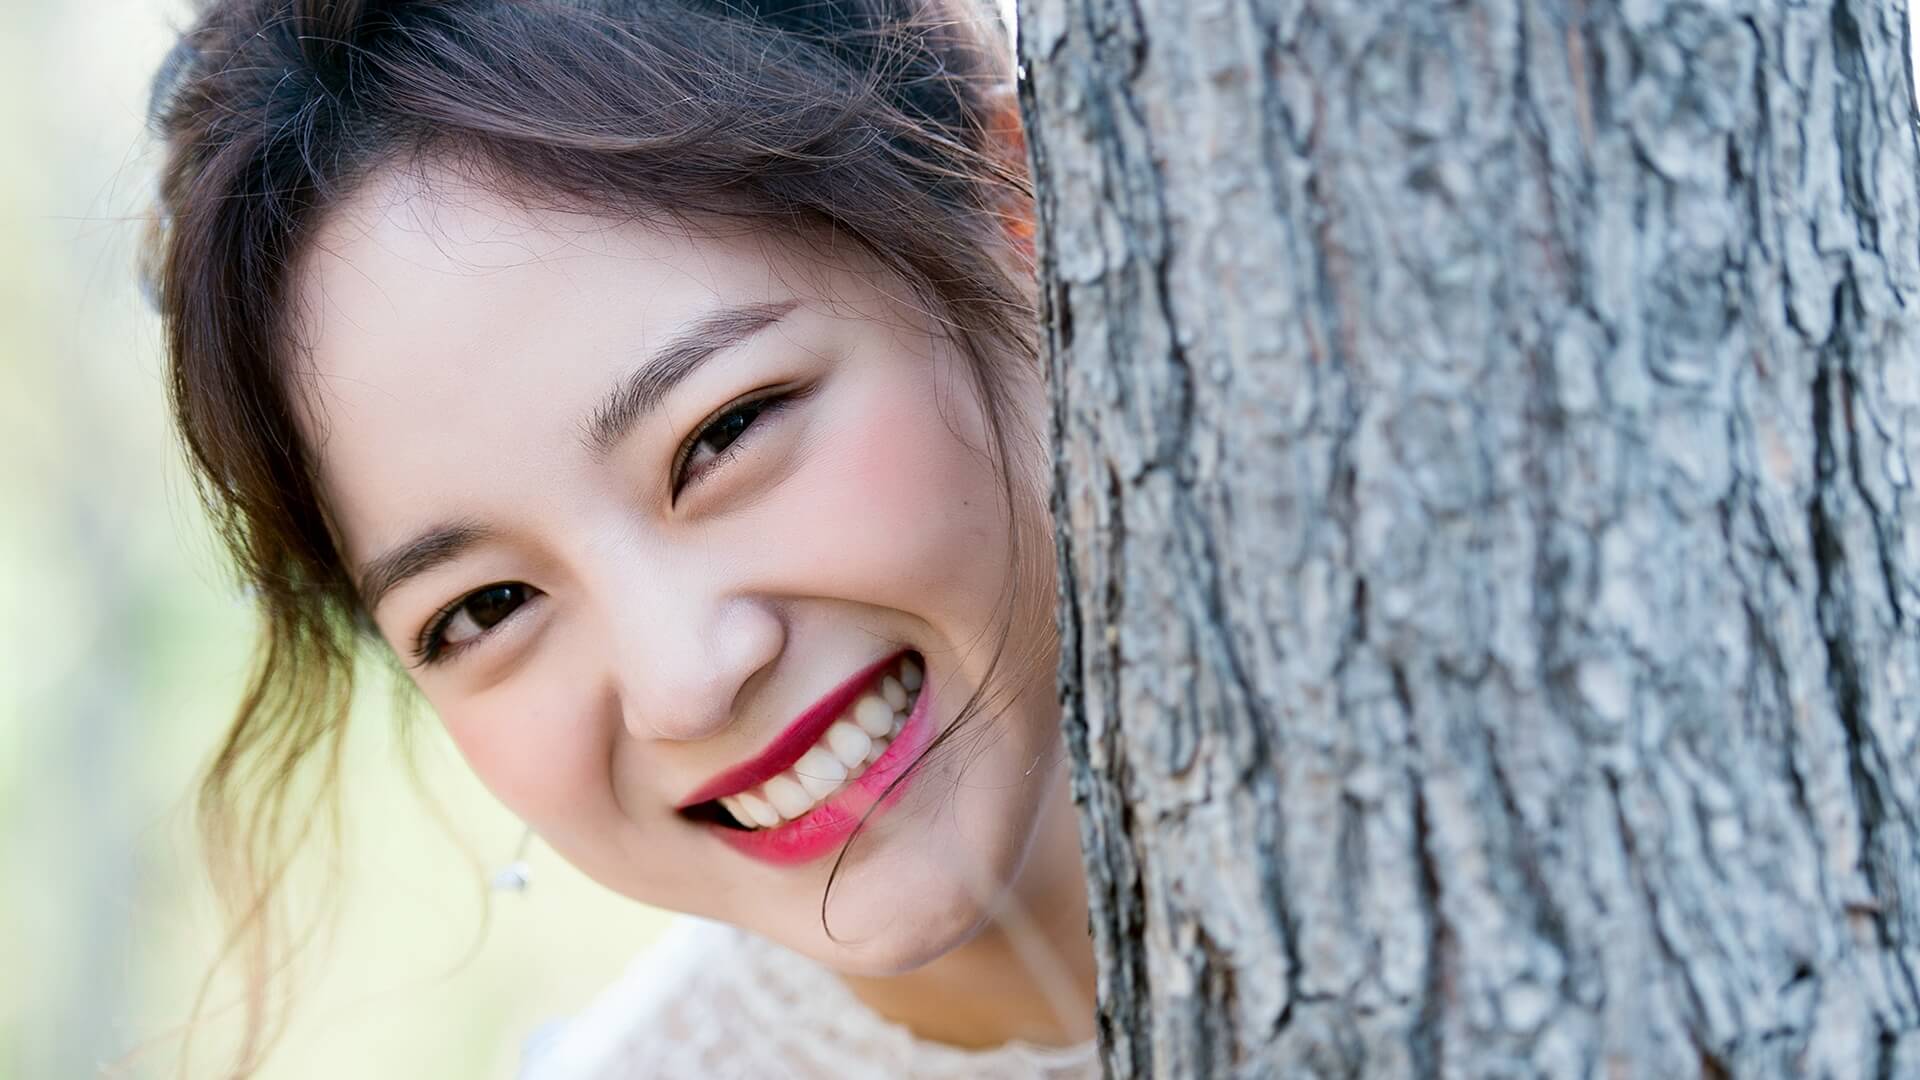 5 Bước Để Có Nụ Cười Đẹp Chói Chang, Bạn Đã Biết Chưa? - Bloganchoi